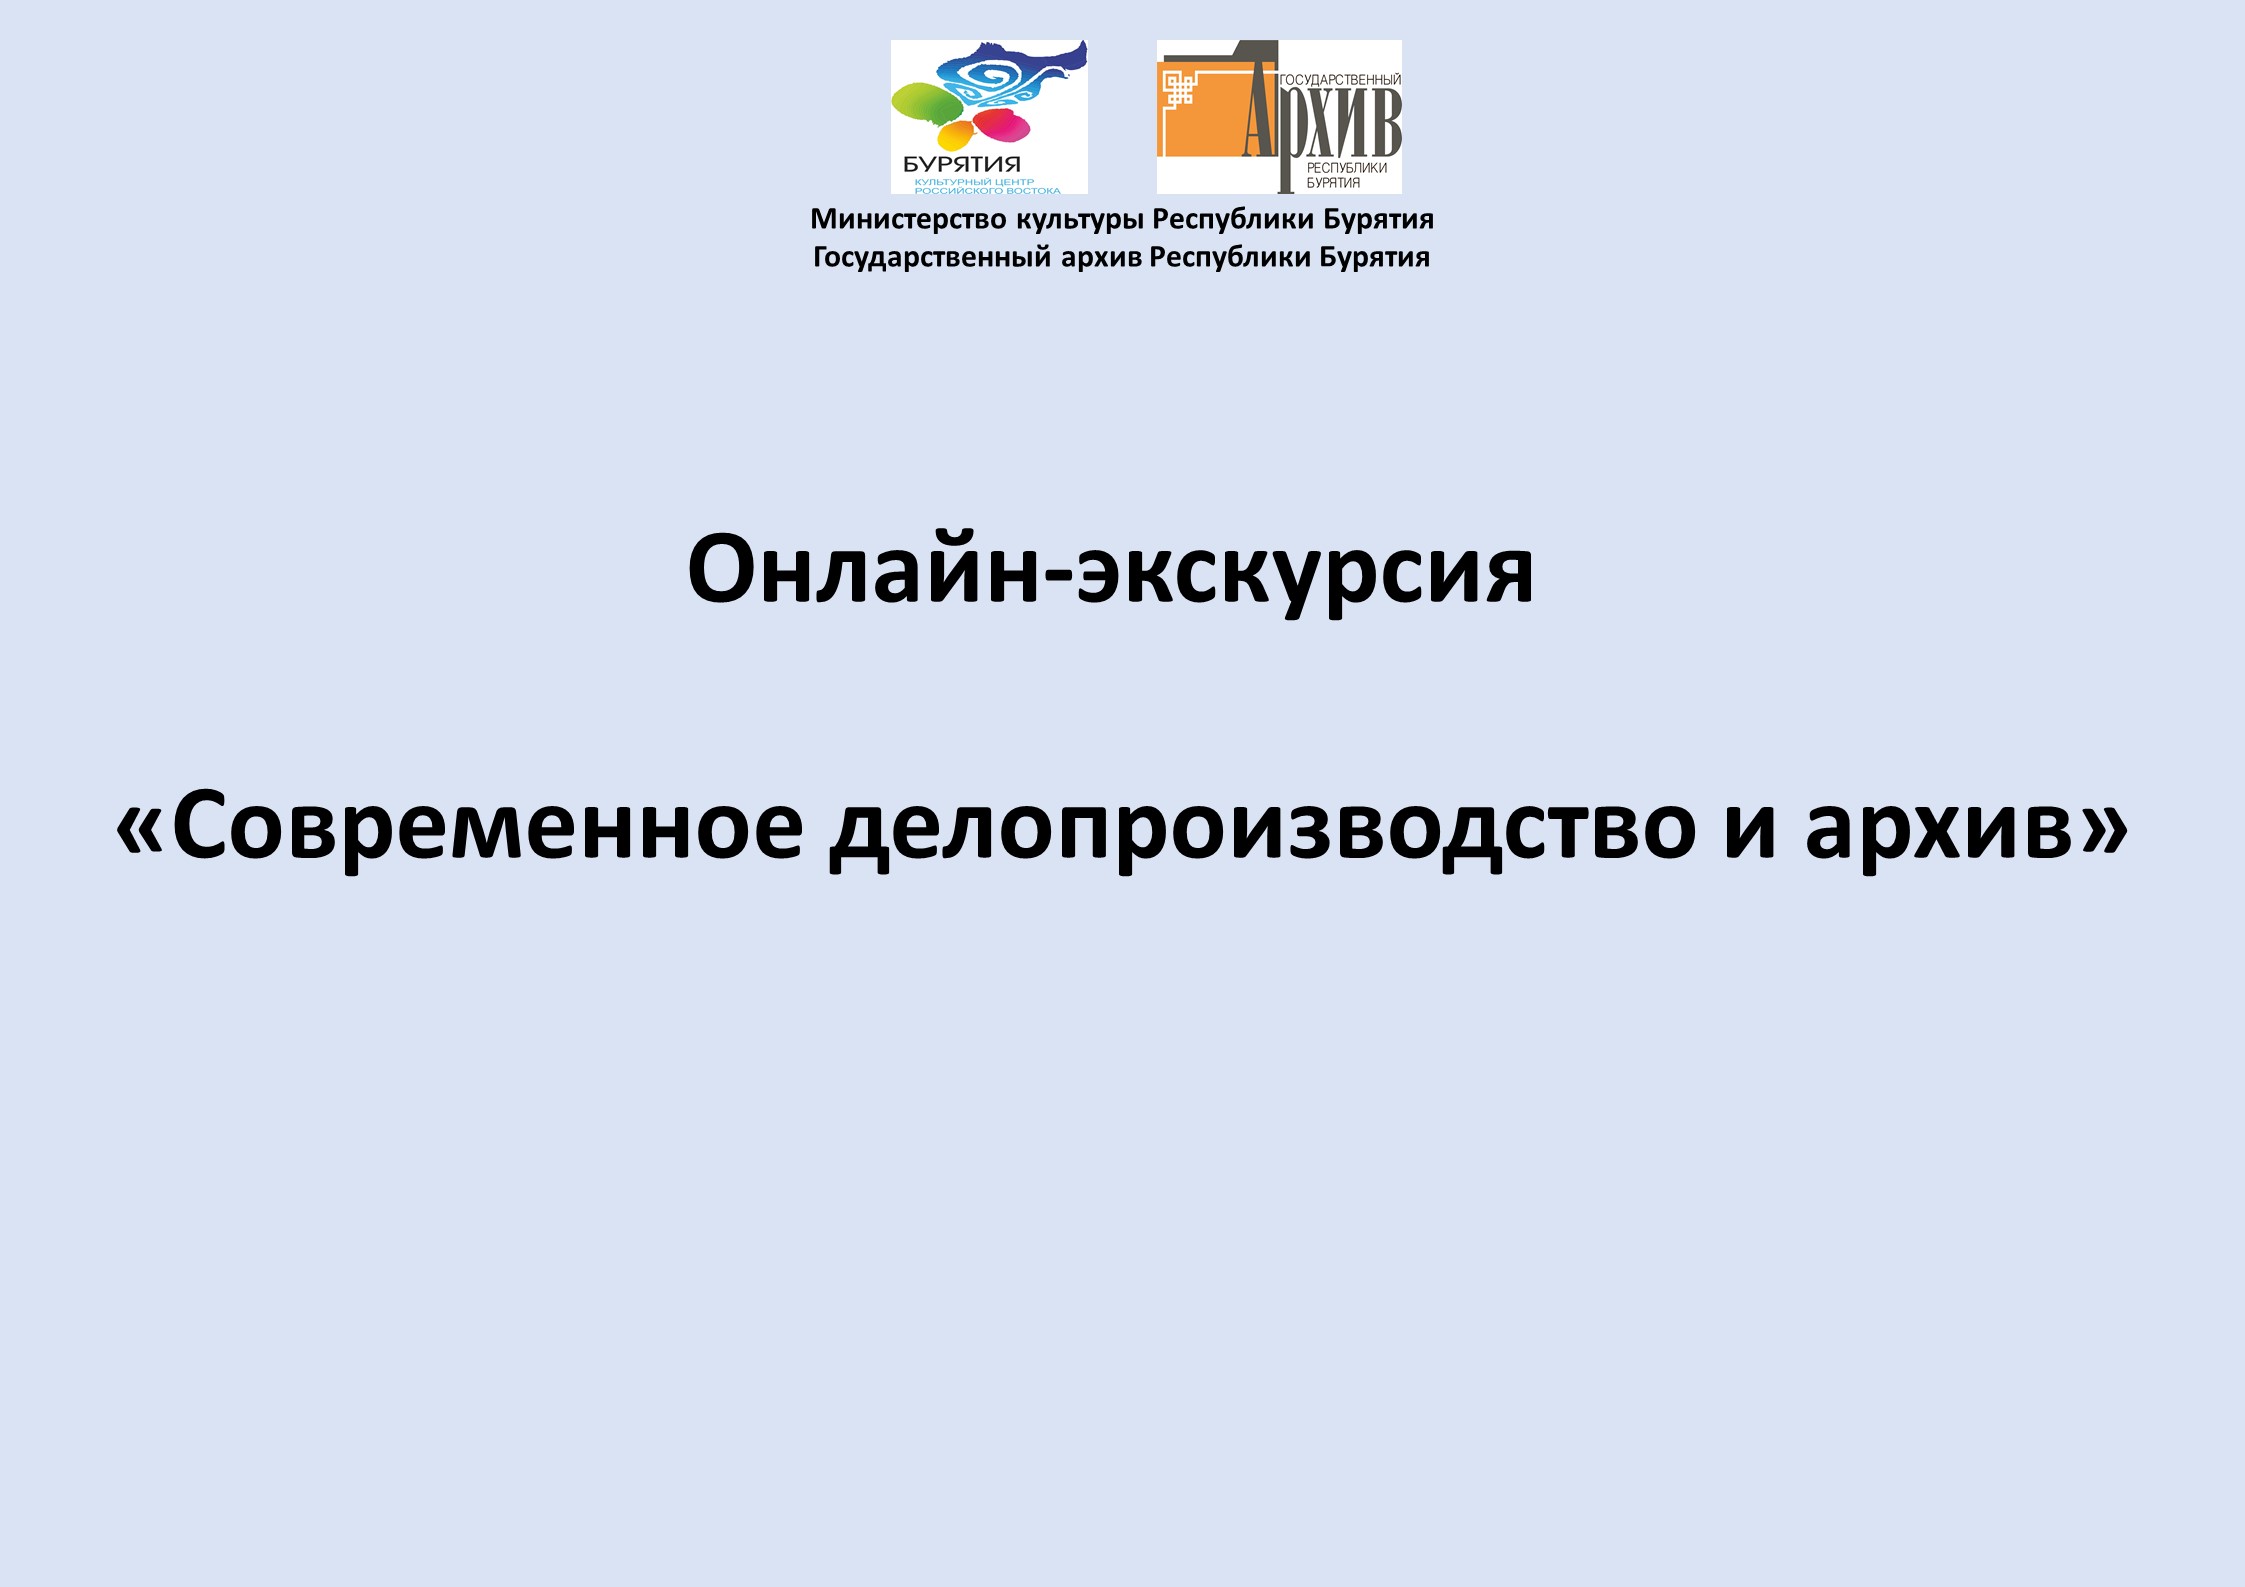 Государственный архив Республики Бурятия подготовил онлайн-экскурсию «Современное делопроизводство и архив»